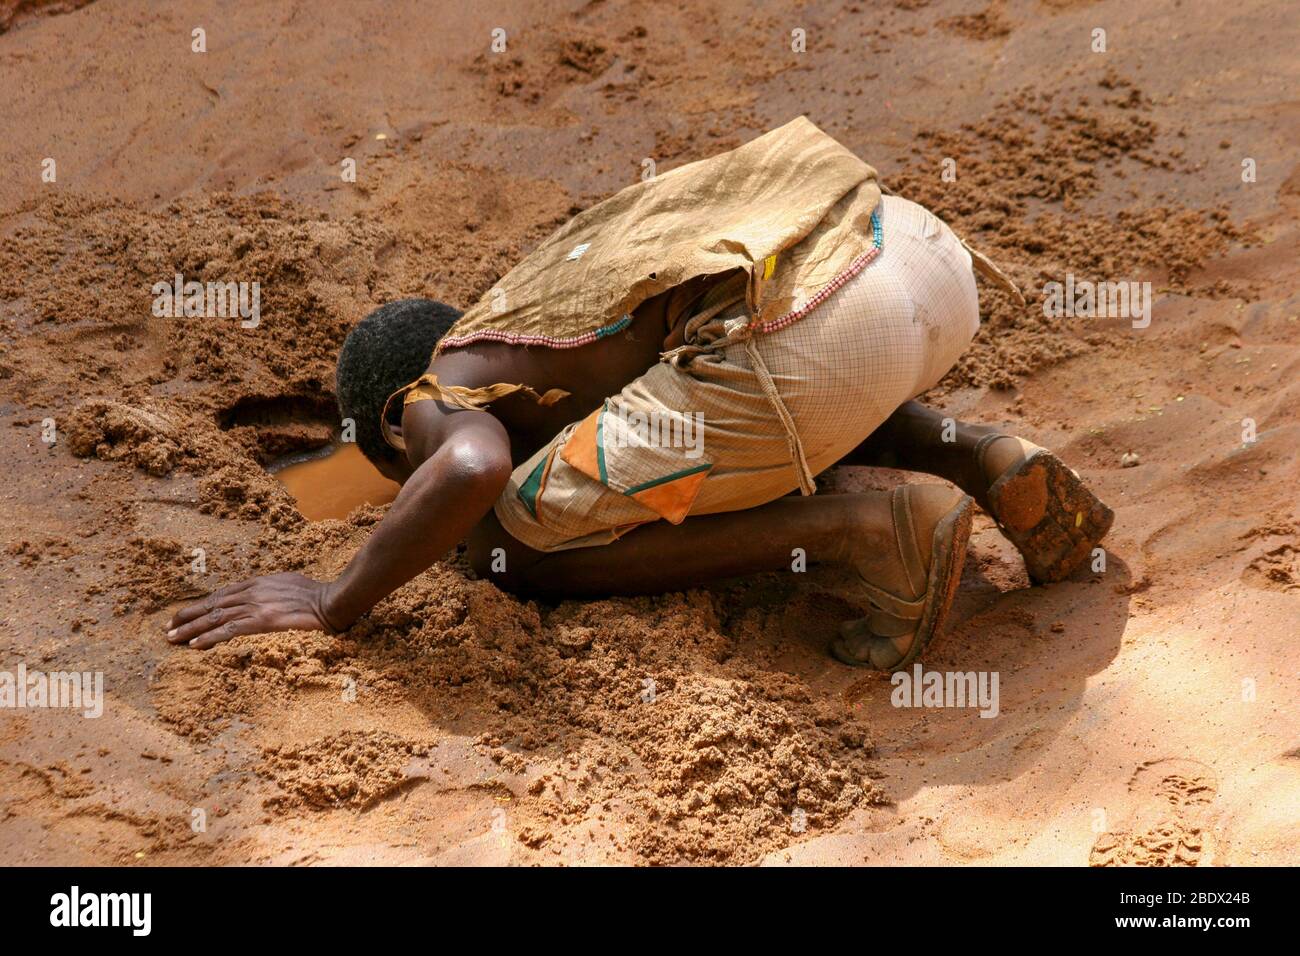 Hombres de Hadza bebiendo agua de un agujero de agua fangoso casi seco. Hadza es una pequeña tribu de cazadores recolectores AKA Hadzabe Tribe. Fotografiado en el lago Eyasi, Foto de stock